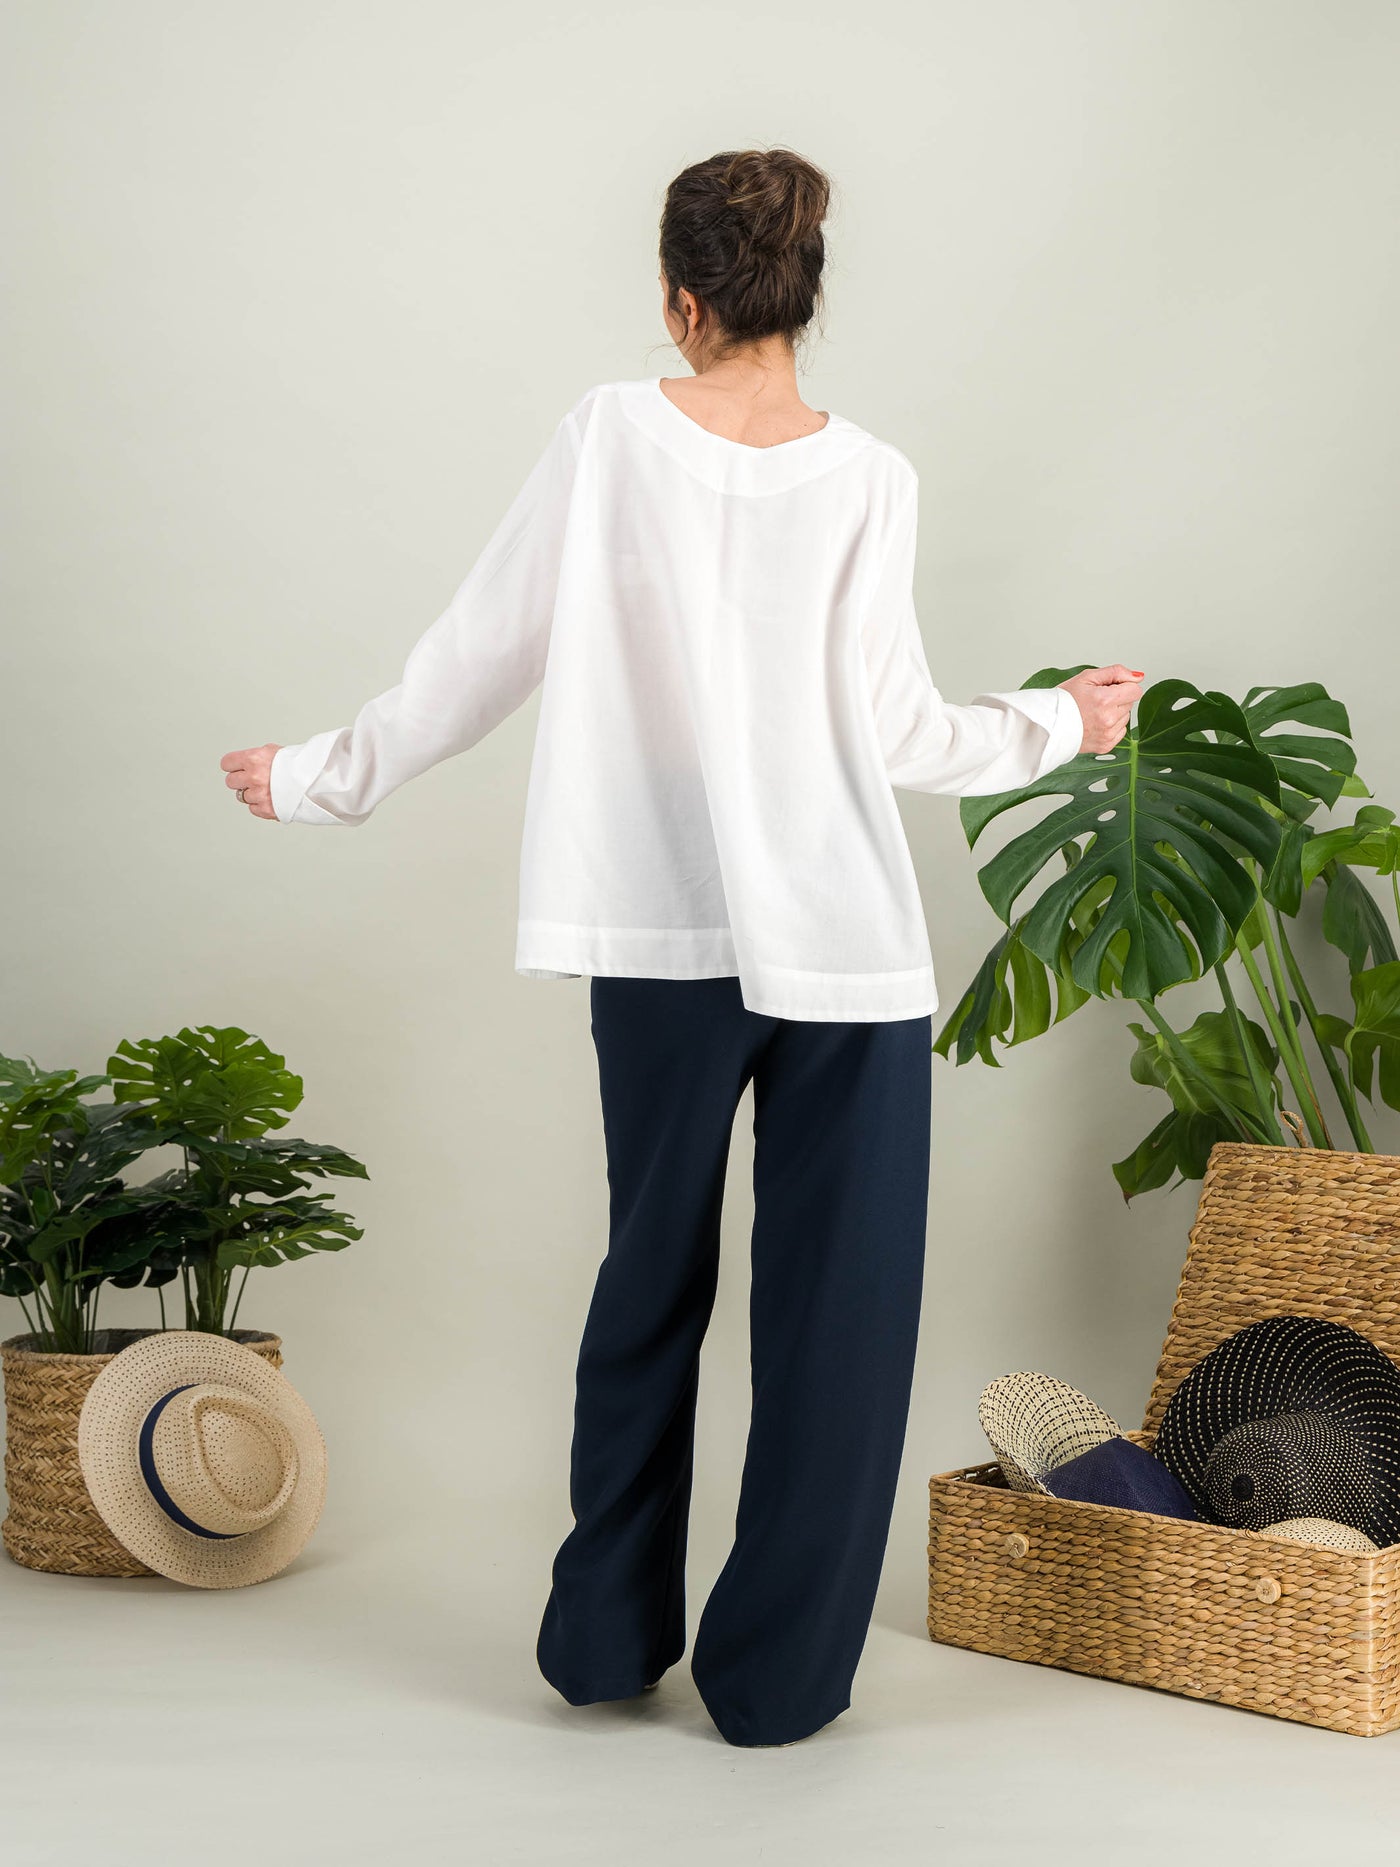 chemise blanche évasée en popeline de coton blanc avec des manches longues pour un look casual chic porté avec un pantalon à pont bleu marine chic col rond